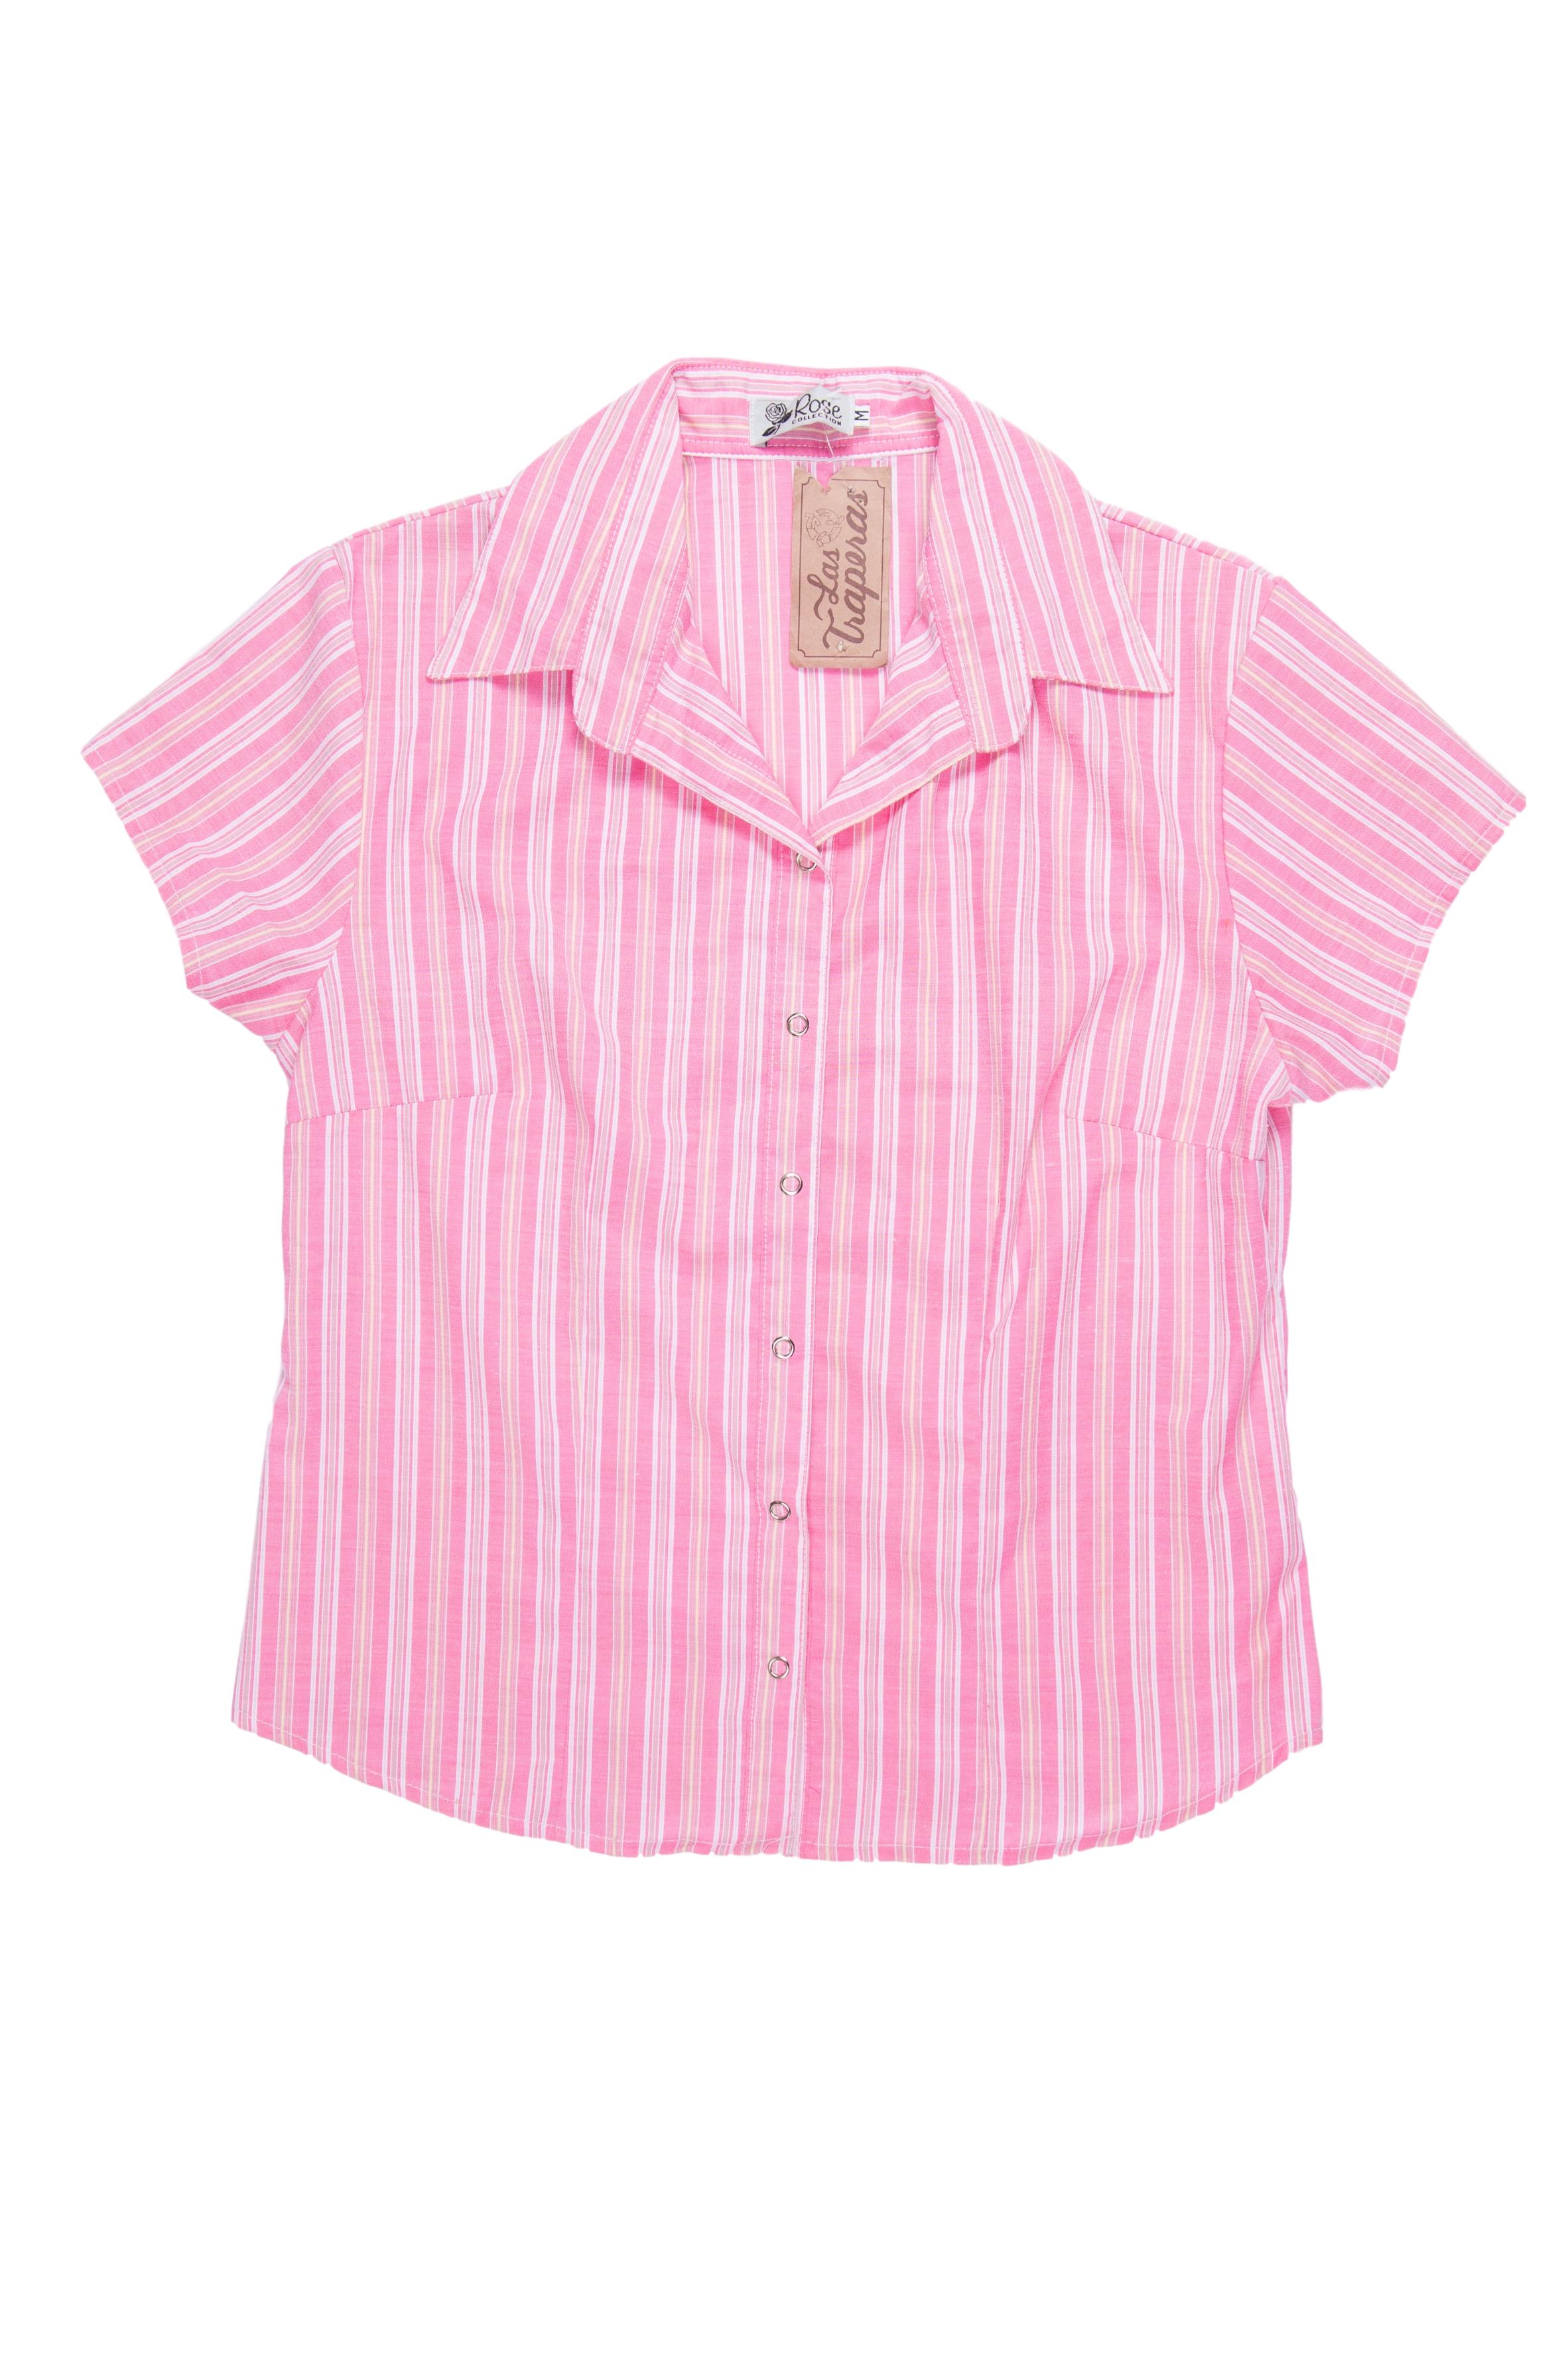 Blusa rosada a rayas blancas y amarillas, con pinzas, broches metálicos en el medio. Busto 94cm 